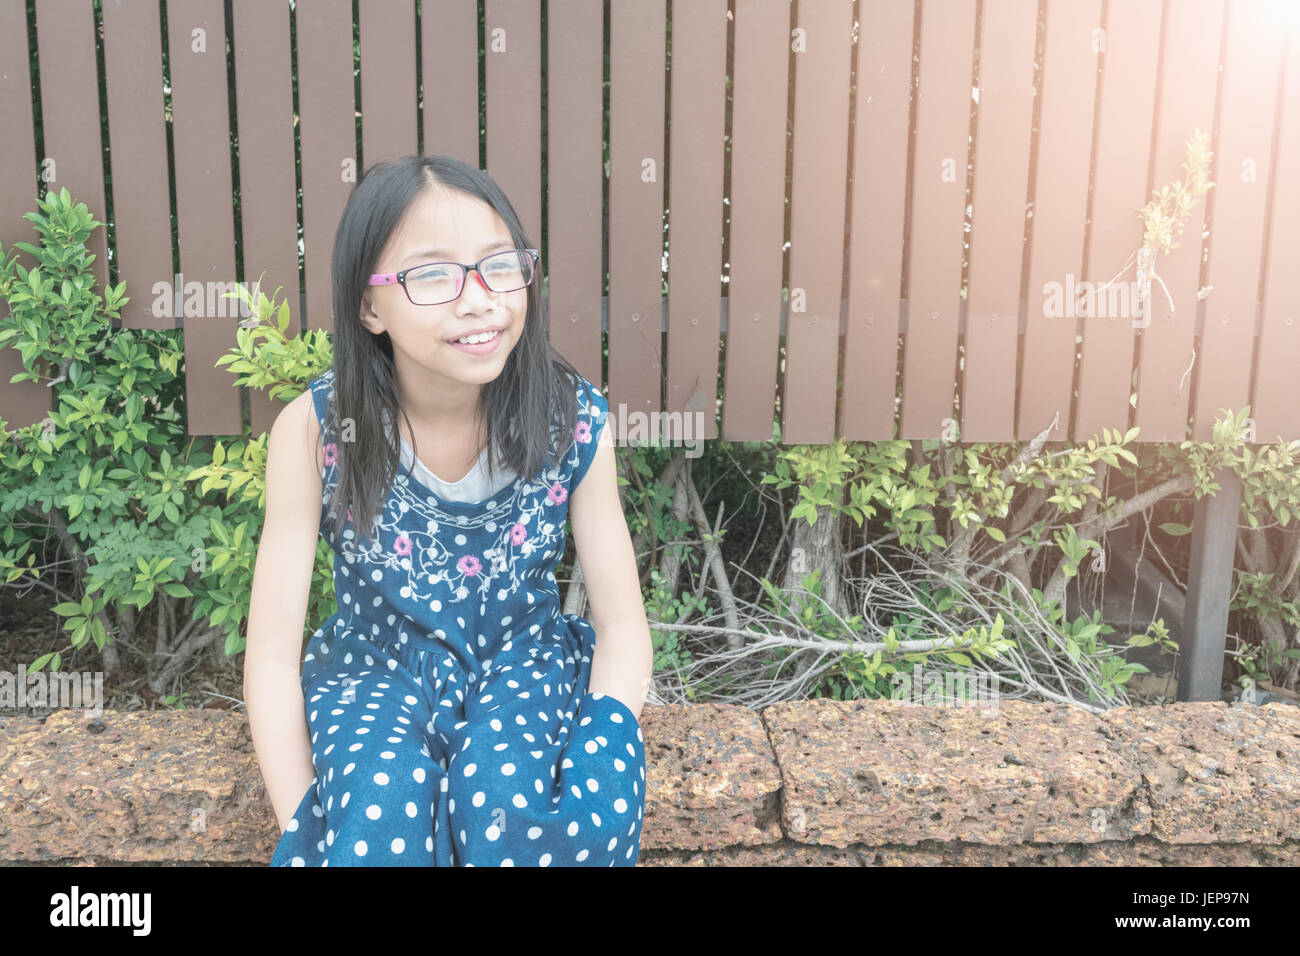 Ritratto di bella ragazza asiatica in giardino. Concetto bambina attraente. Foto Stock